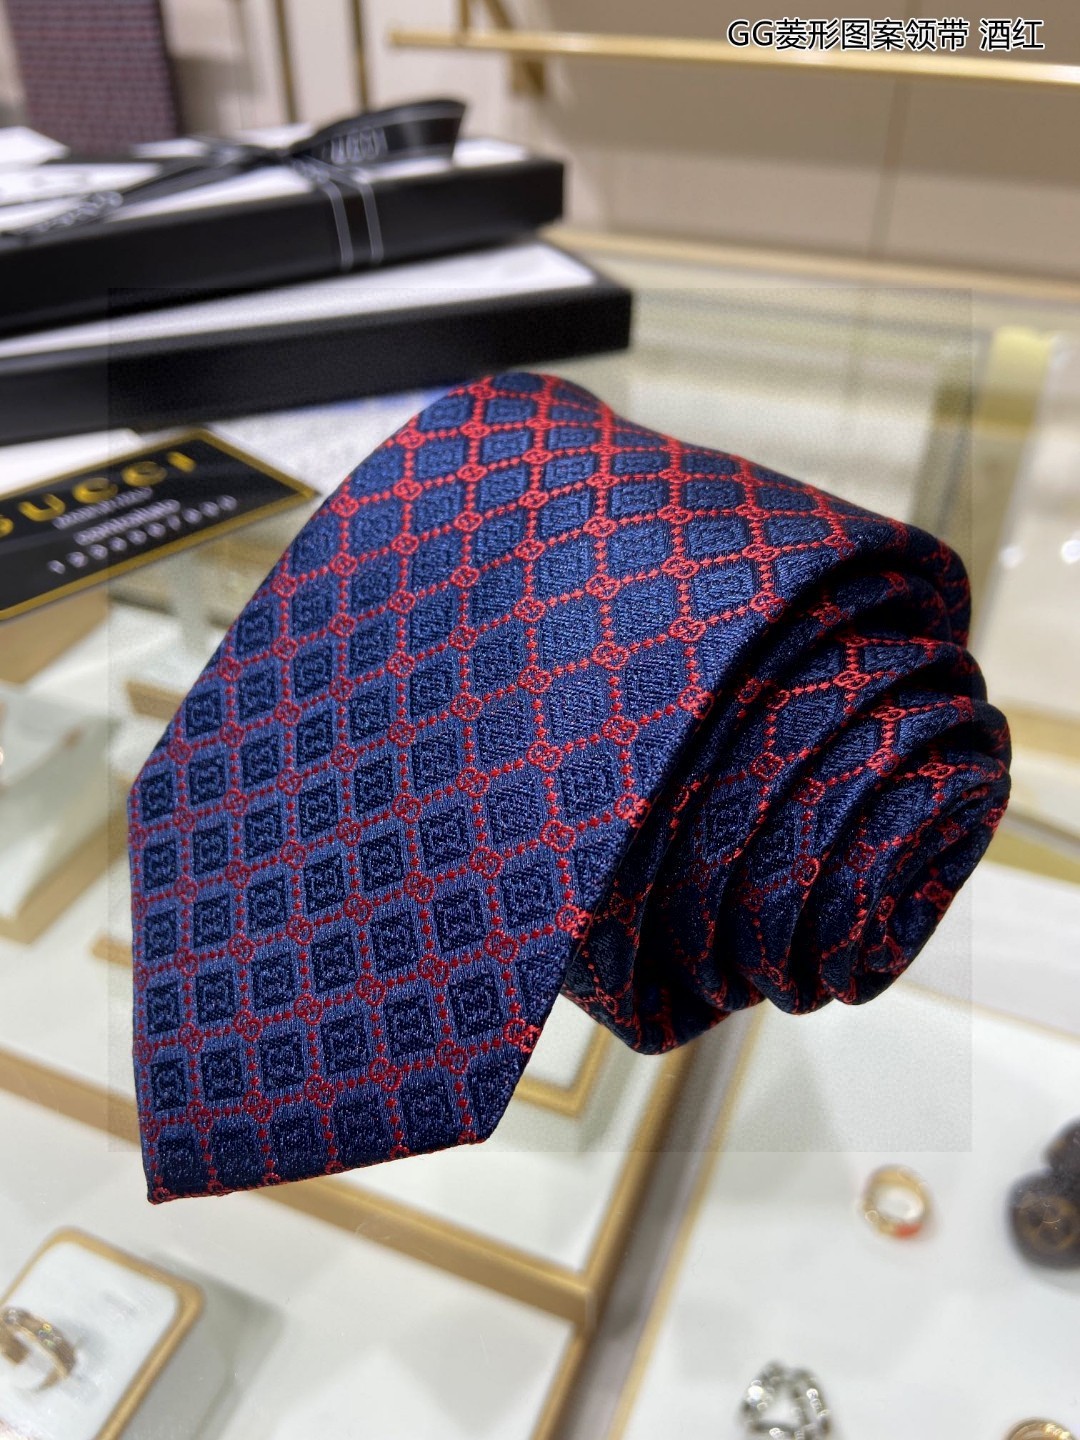 特价G家专柜新款GG菱形图案领带男士领带稀有采用经典小GLOGO提花展现精湛手工与时尚优雅的理想选择这款